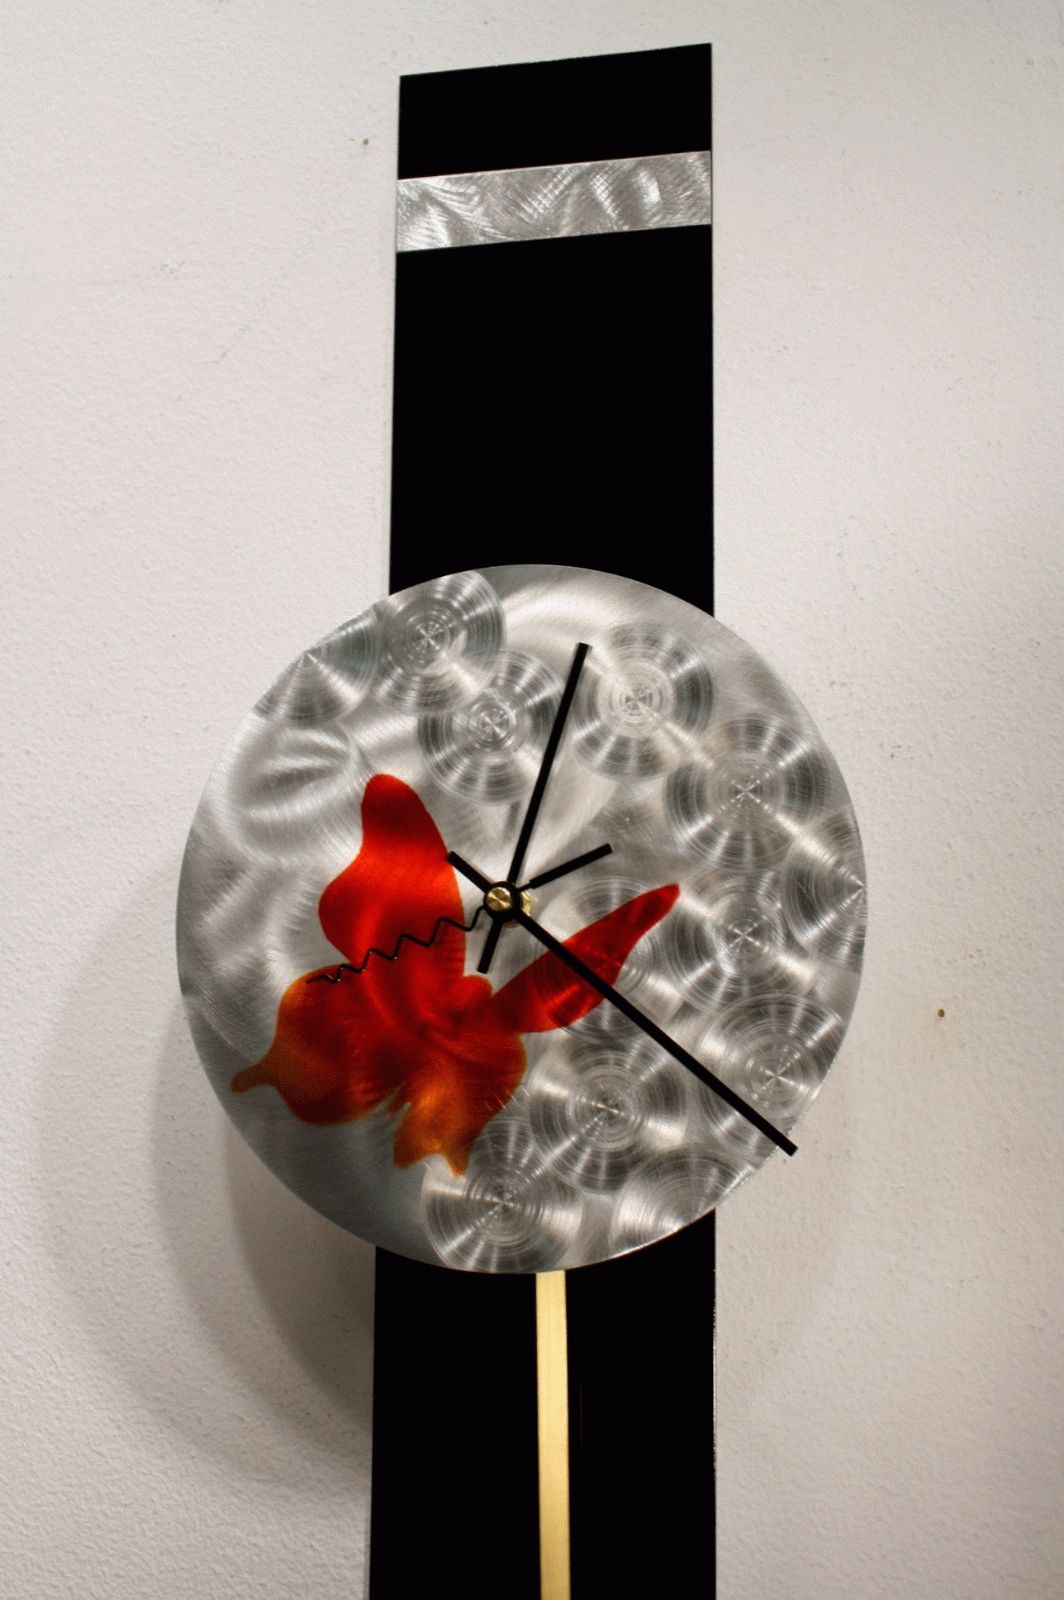 Metal Wall Art Sculpture Pendulum Clock Modern Abstract Decor Throughout Most Up To Date Abstract Metal Wall Art With Clock (View 19 of 20)